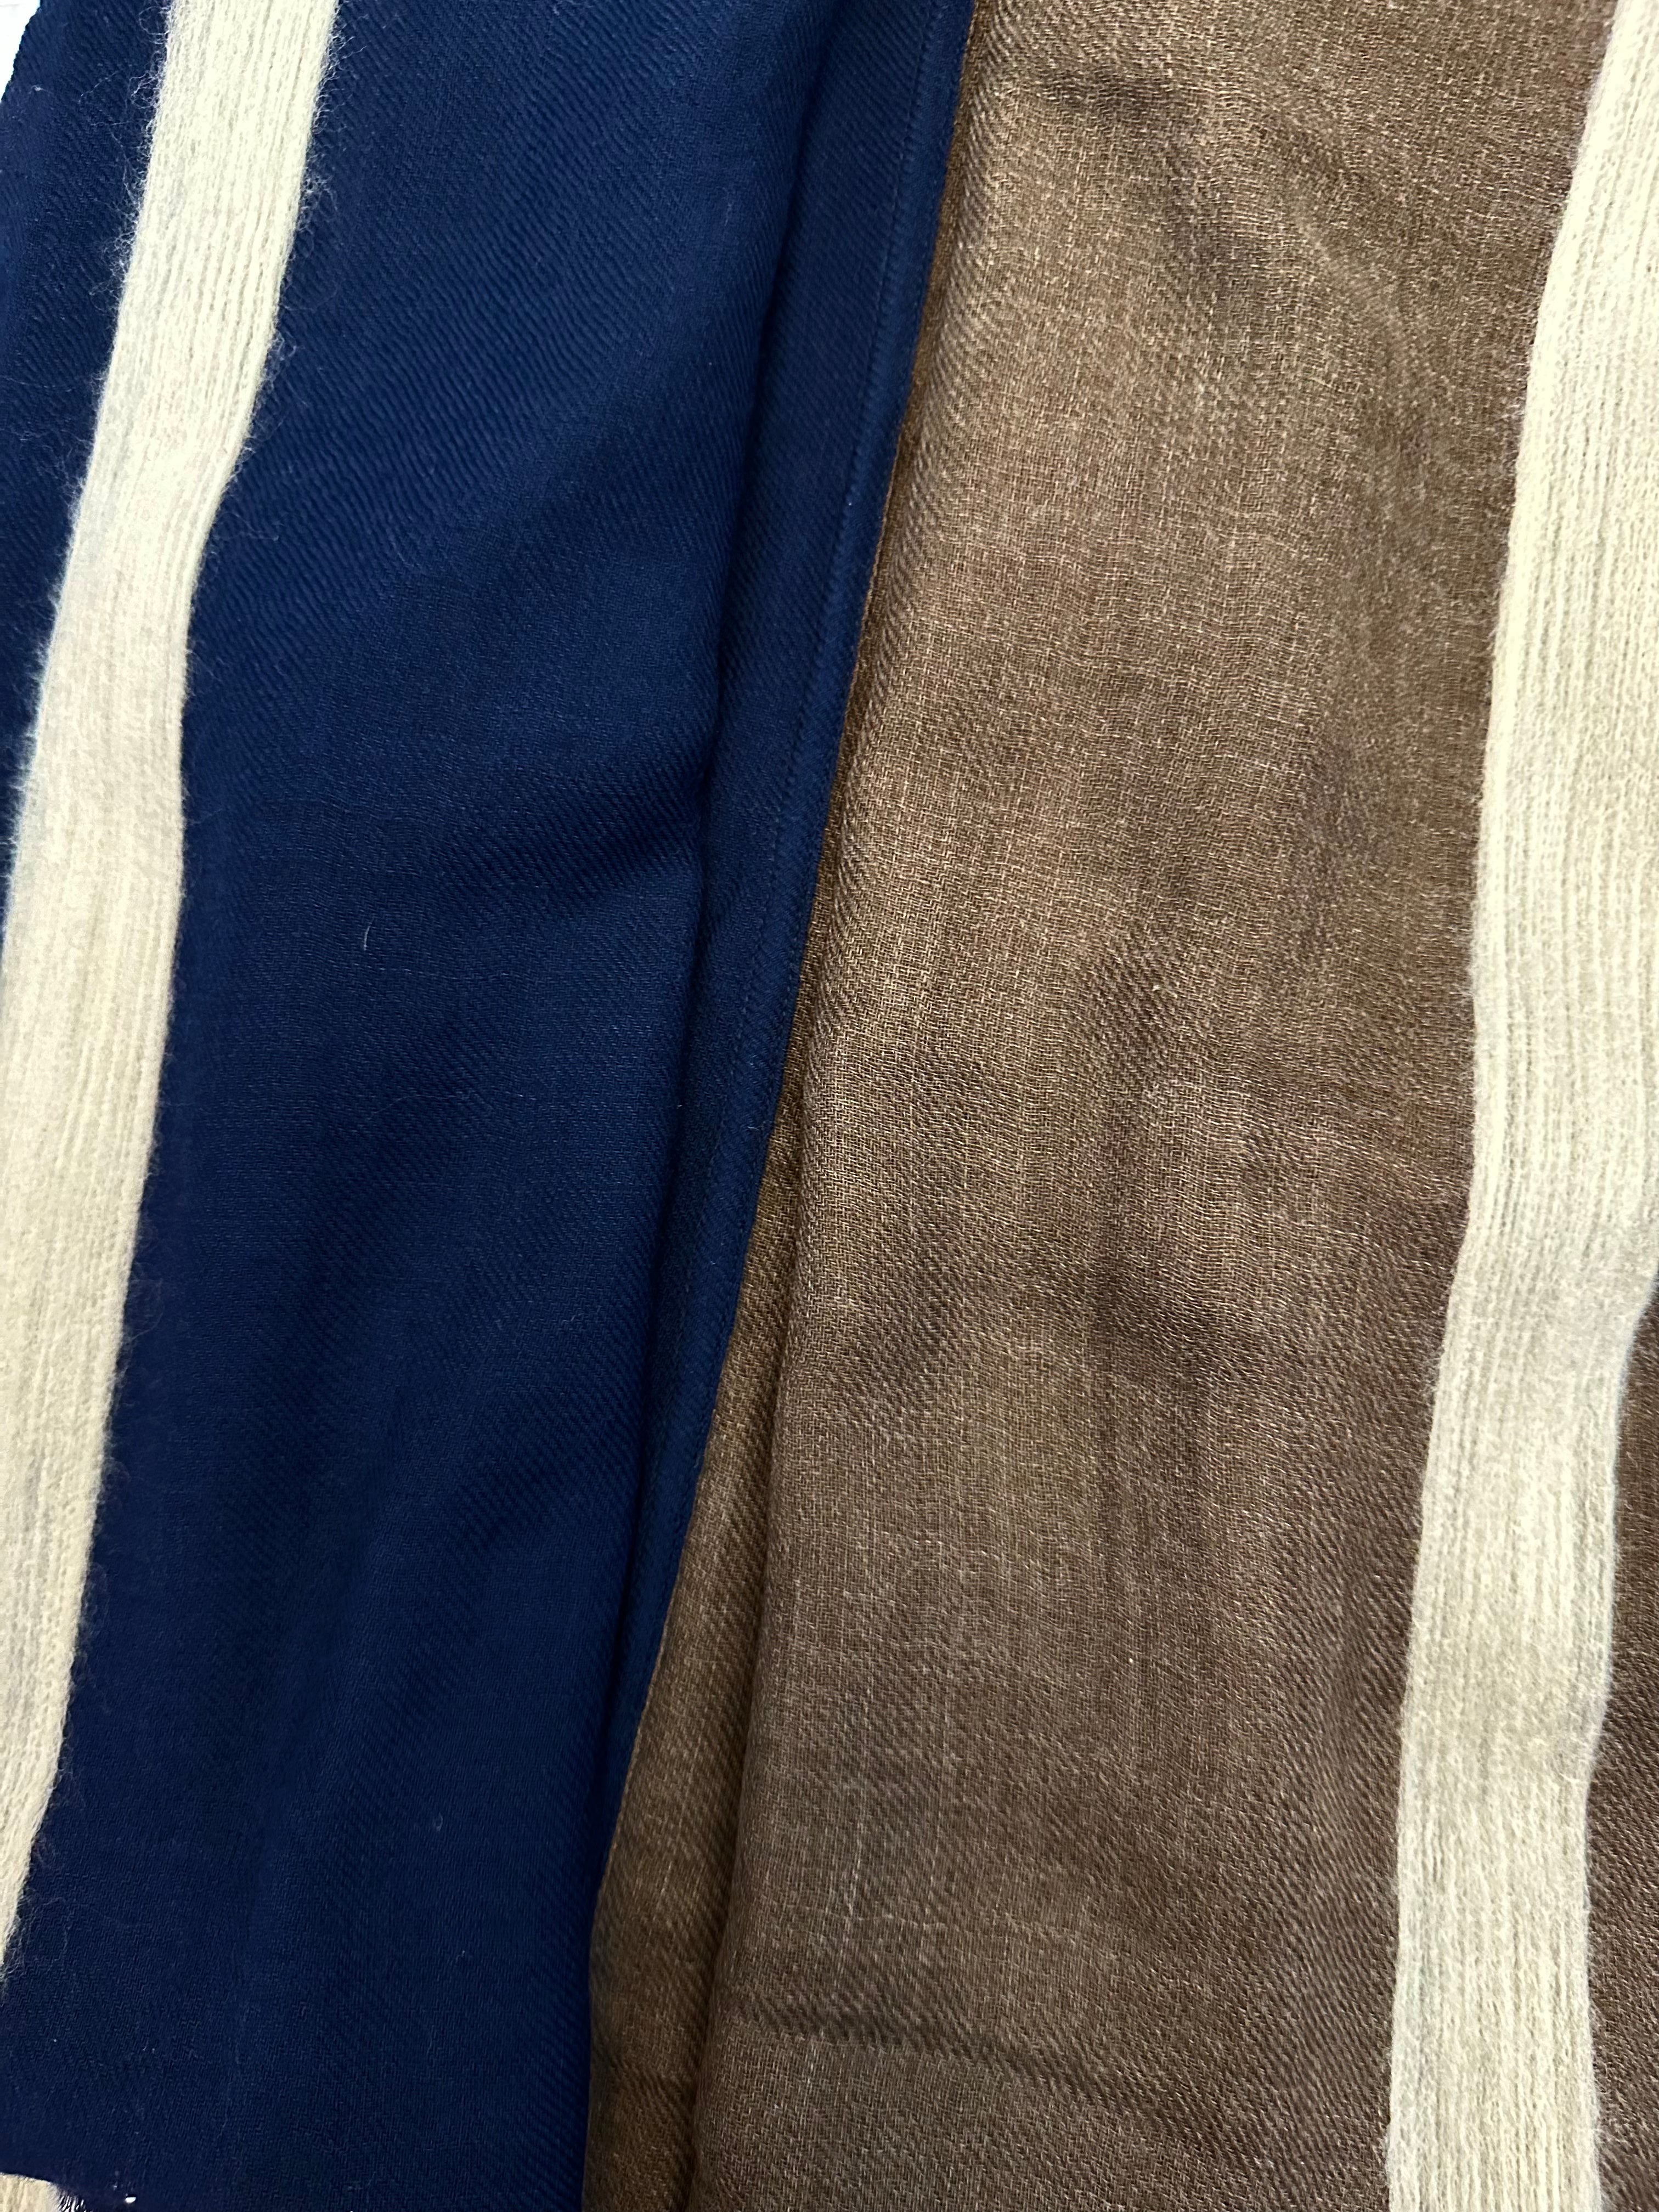 Sciarpa lana doppio colore agugliata moro blu Franco Bassi